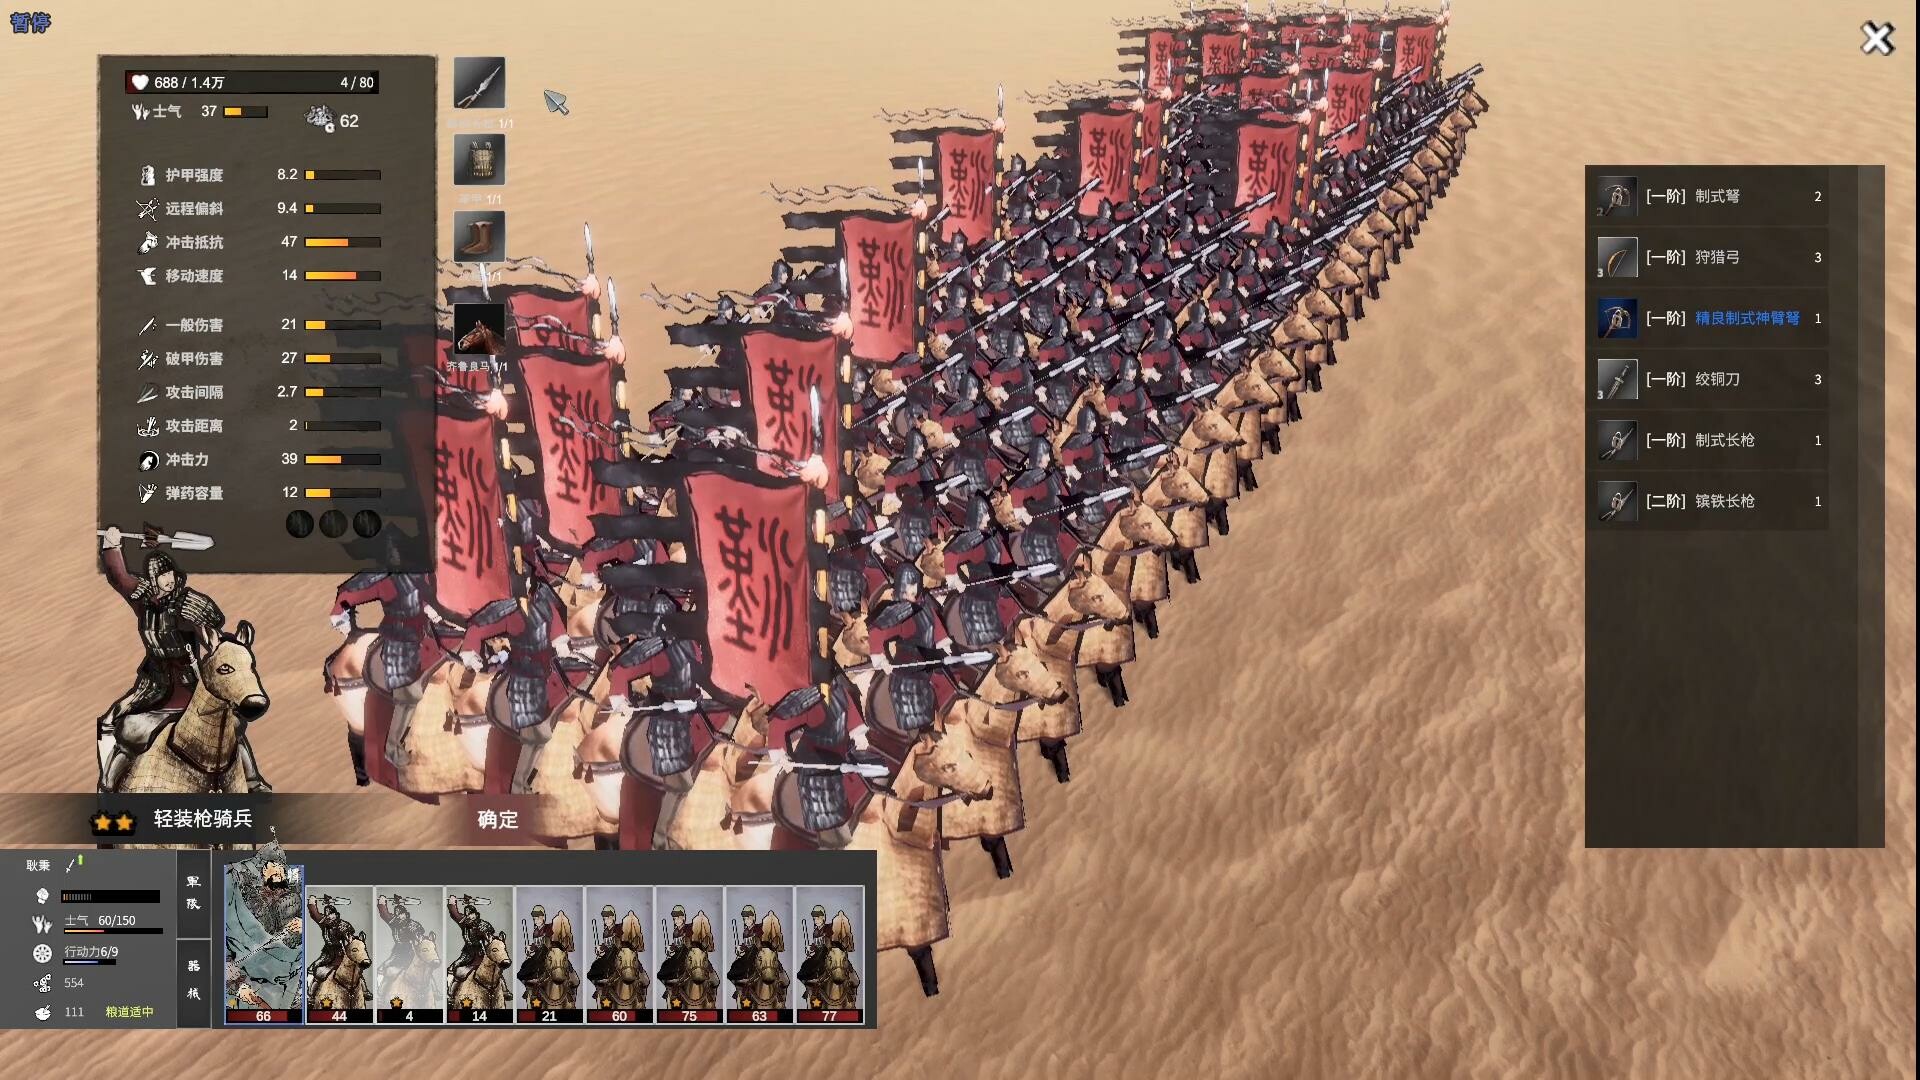 高能電玩節歷史題材的戰爭遊戲《橫戈》預告片發布